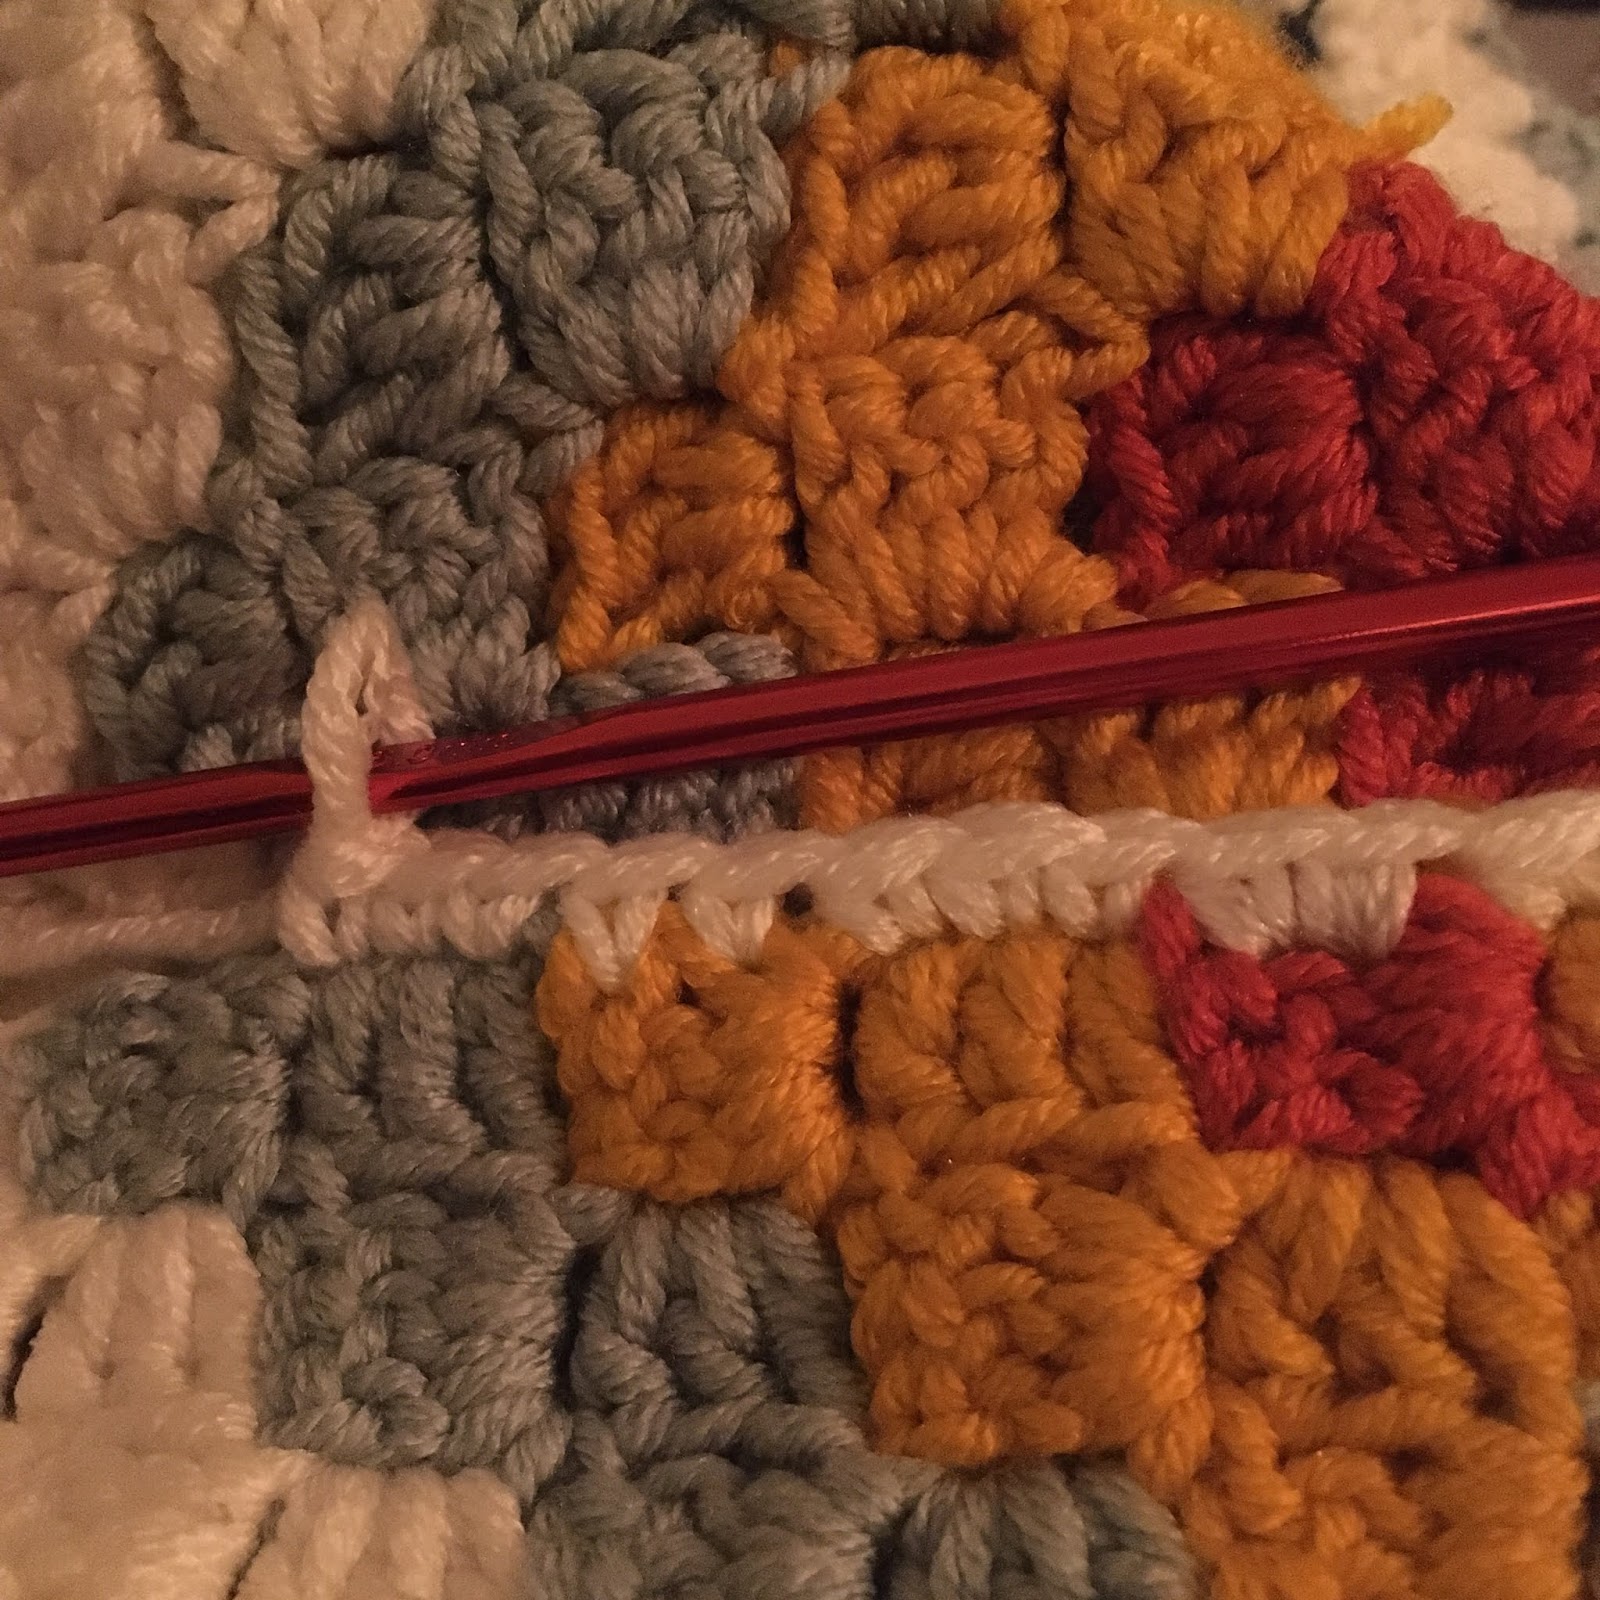 Four Corners Blanket – Studio Madelaine Crochet Patterns